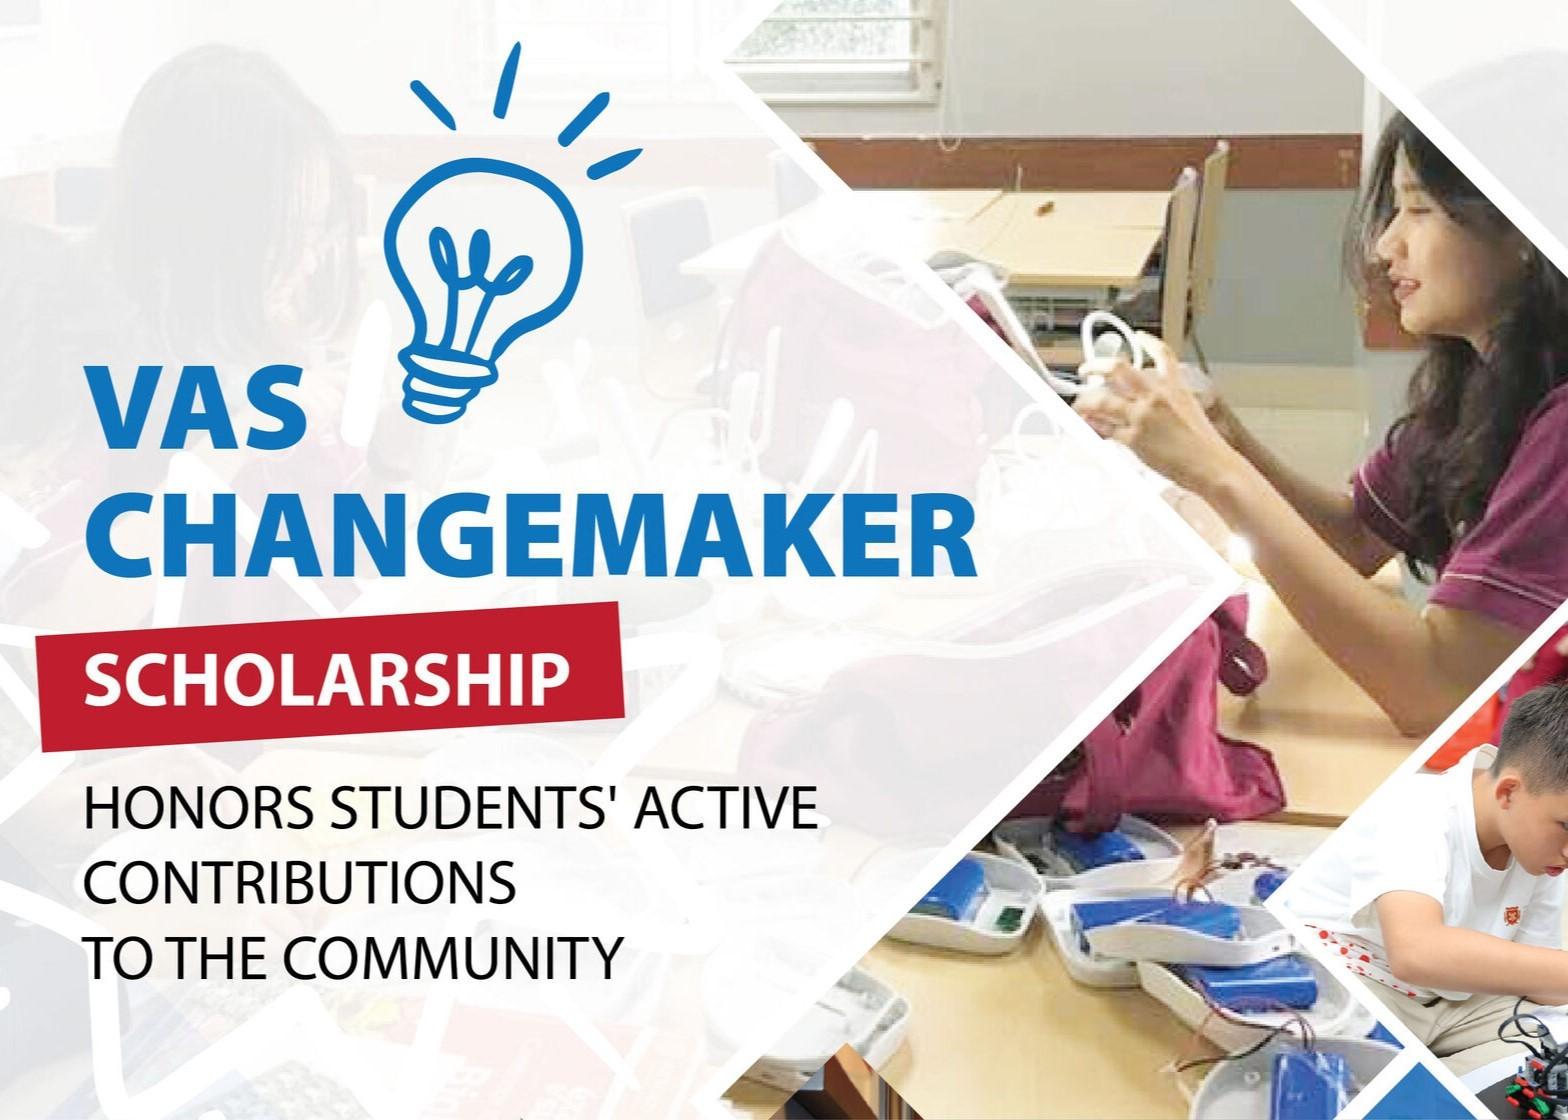 Học bổng “VAS Changemaker Scholarship” vinh danh học sinh đóng góp tích cực cho cộng đồng